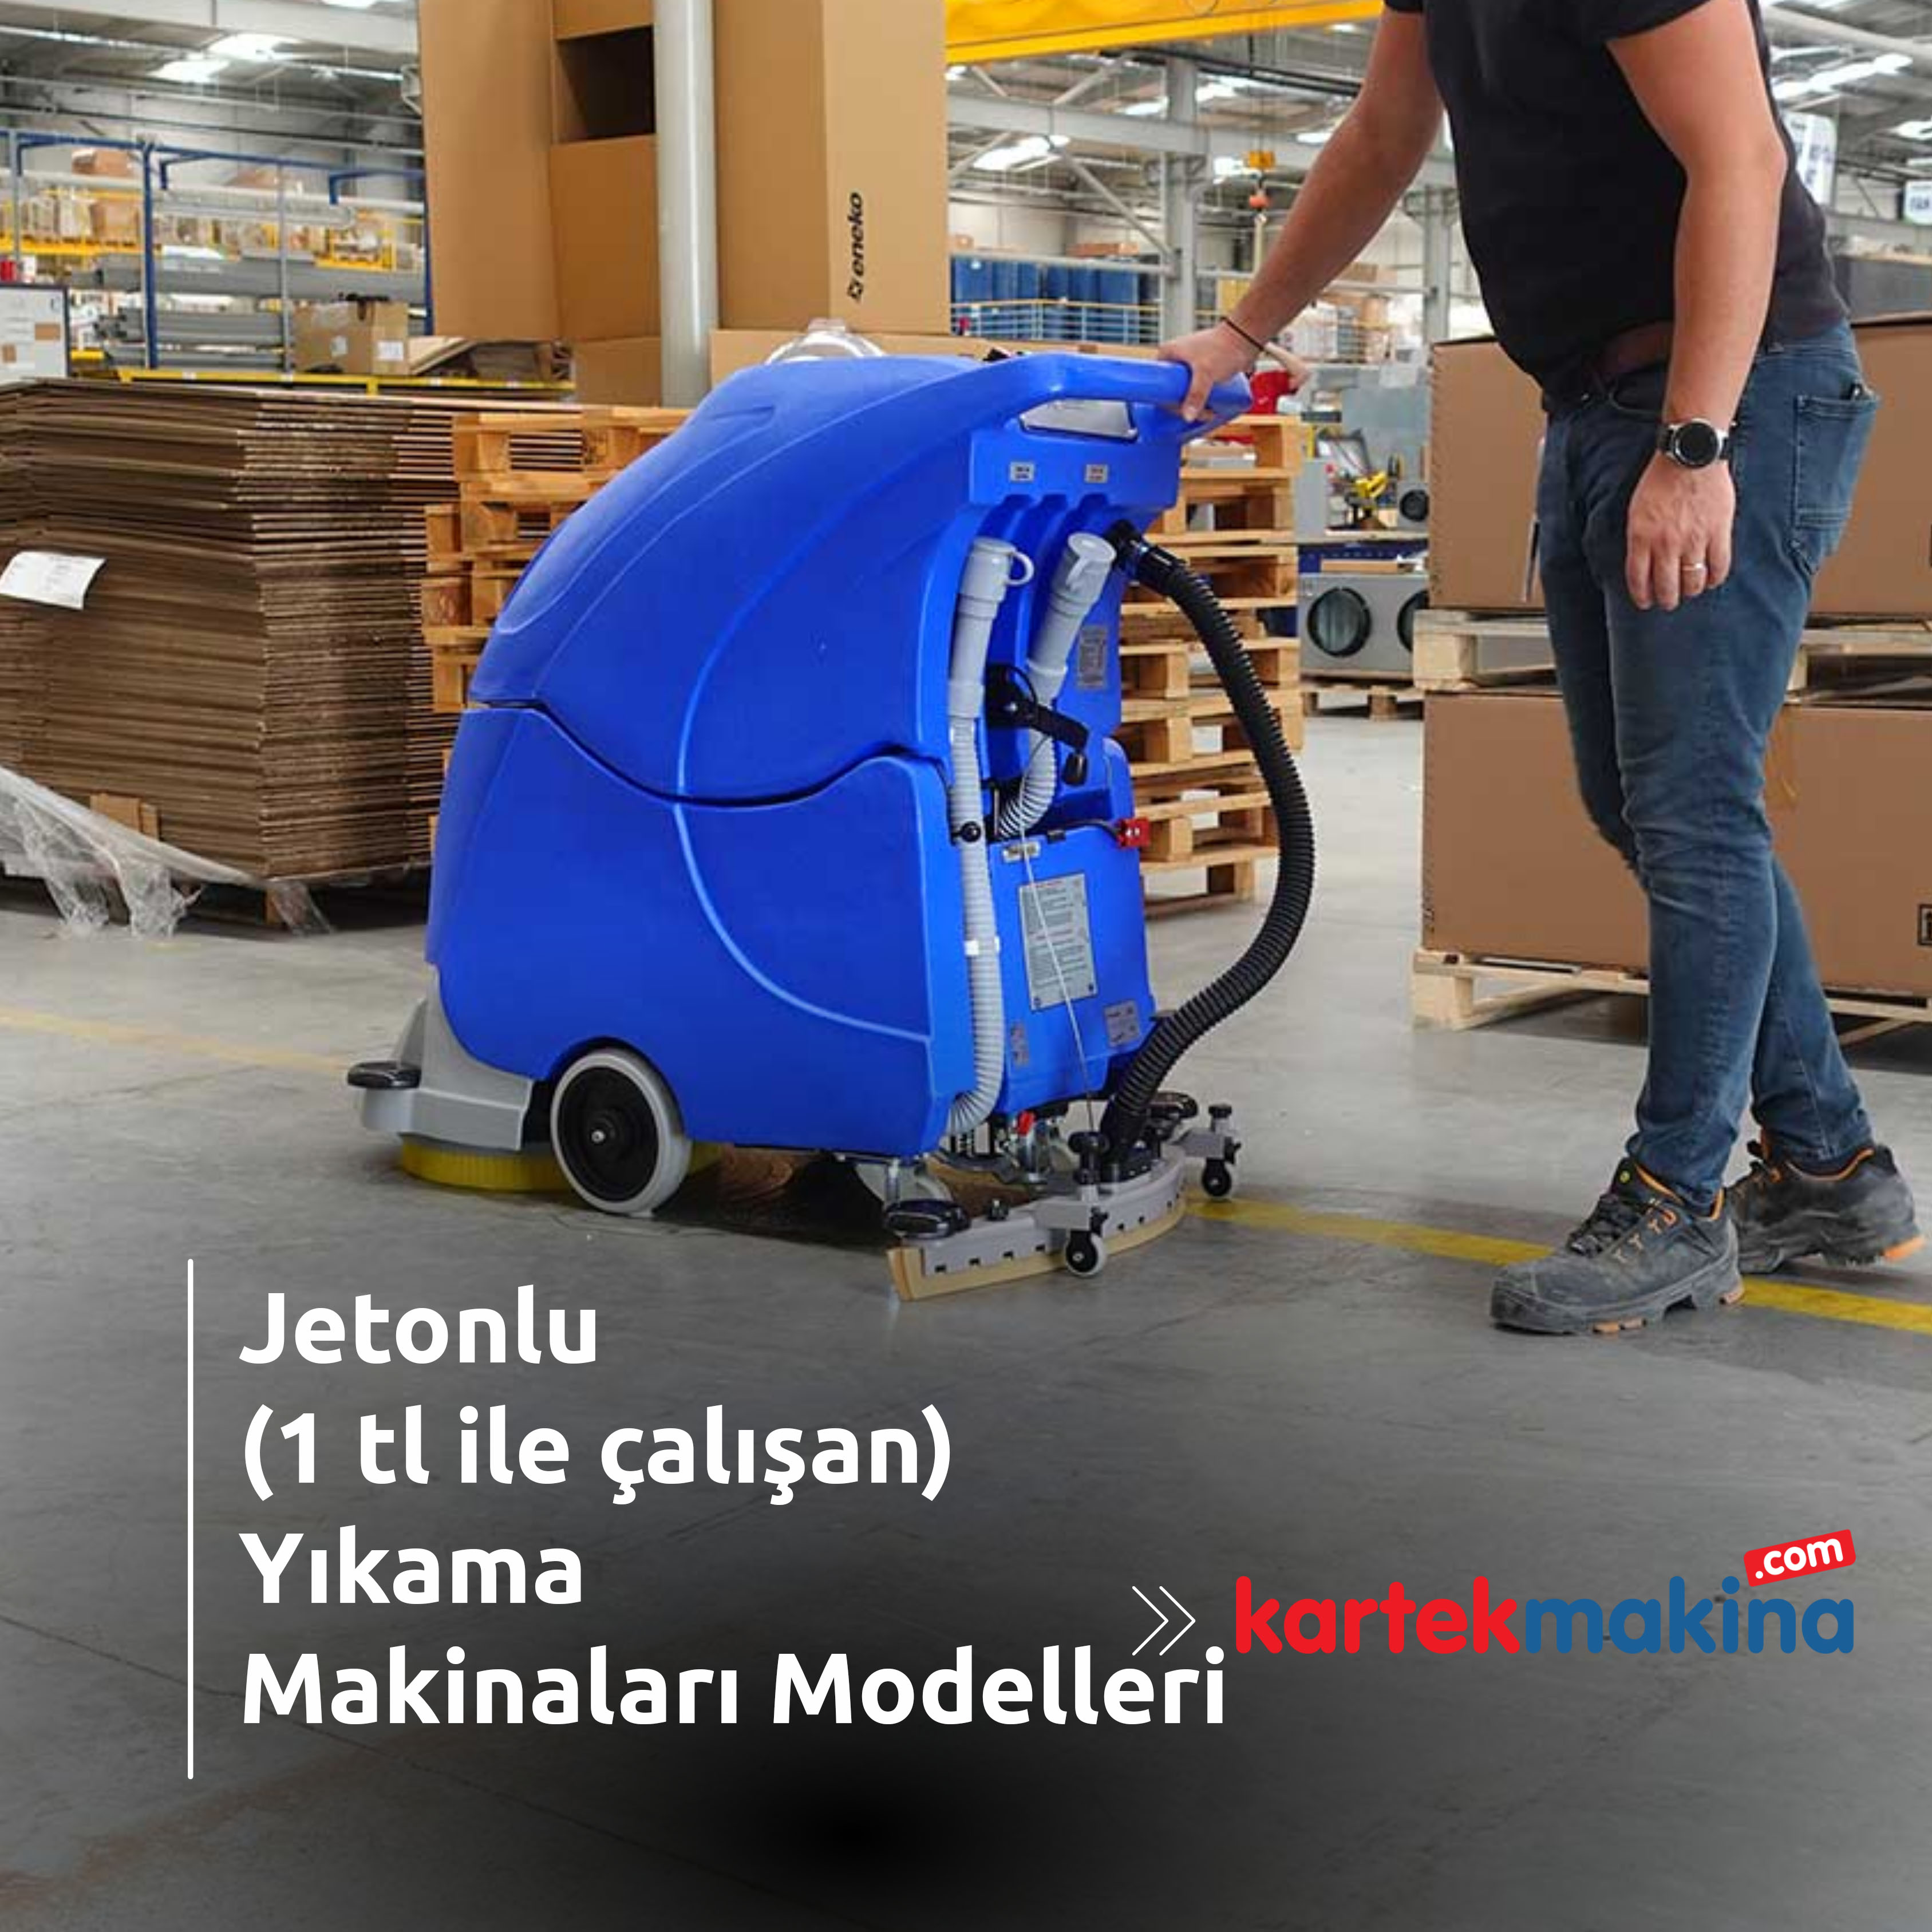 Jetonlu (1 tl ile çalışan) Yıkama Makinaları Modelleri - Jetonlu (1 tl ile çalışan) Yıkama Makinaları Modelleri